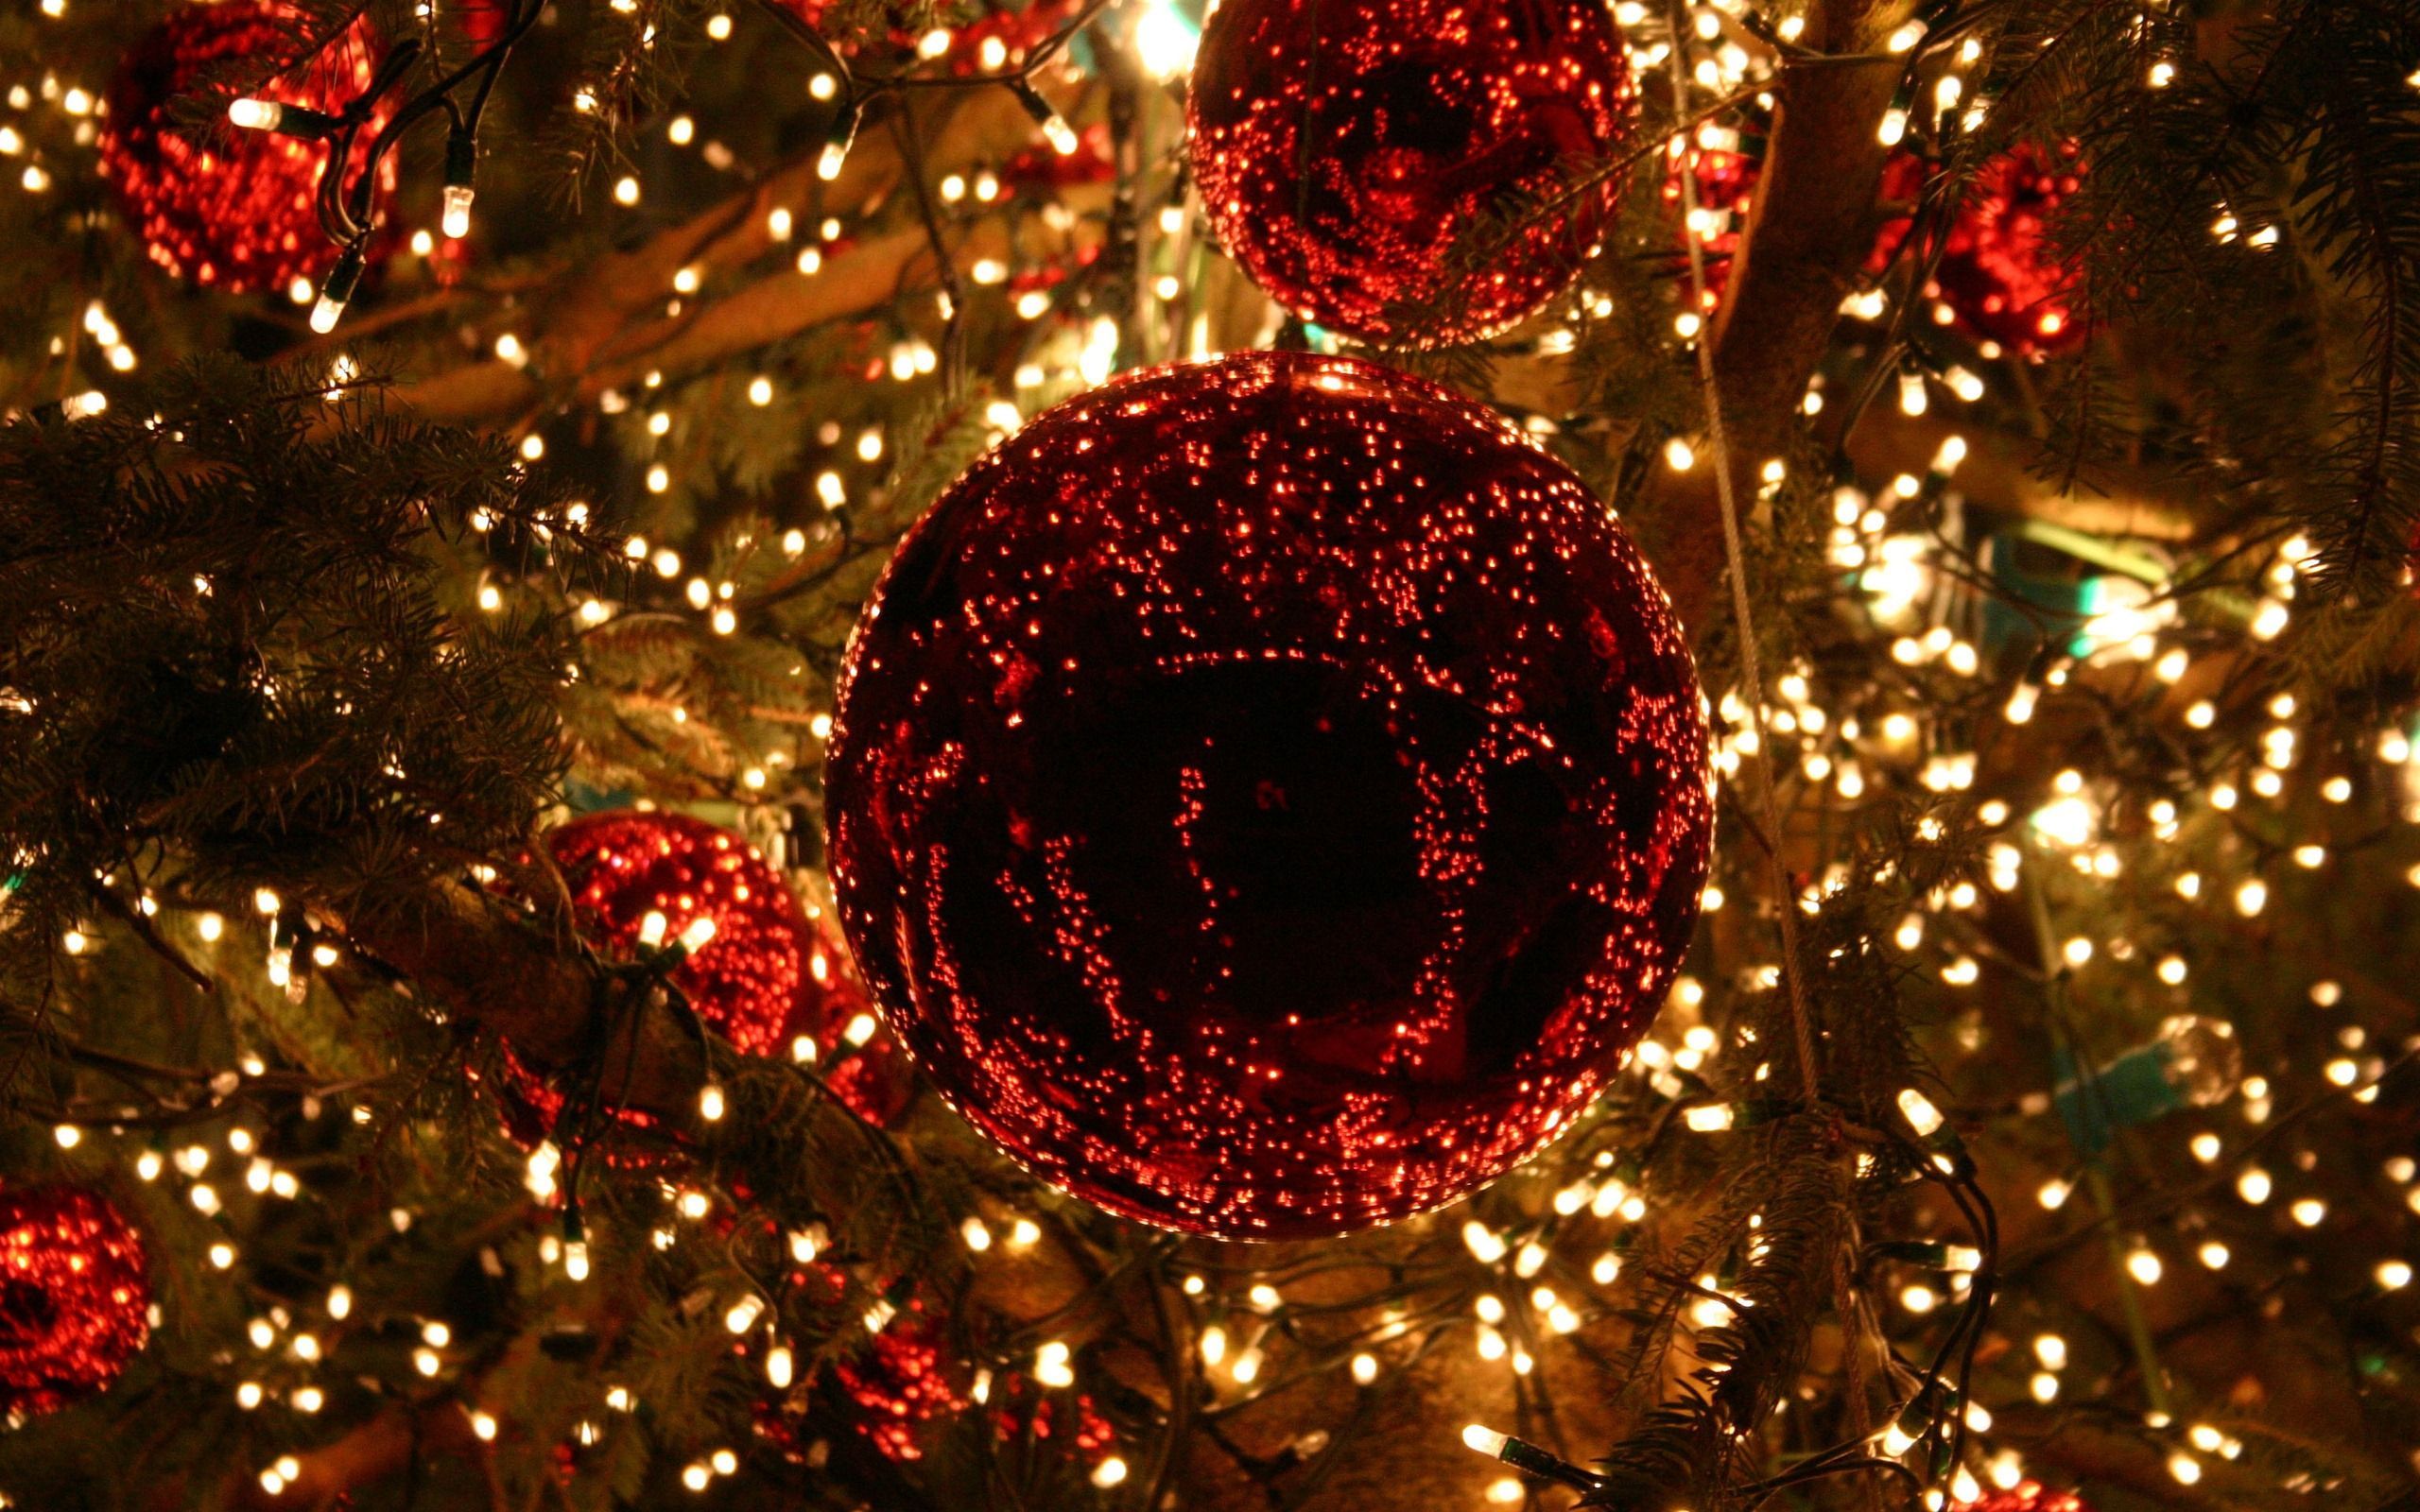 Christmas lights wallpaper HD 1080p. Christmas lights wallpaper, Christmas lights background, Beautiful christmas